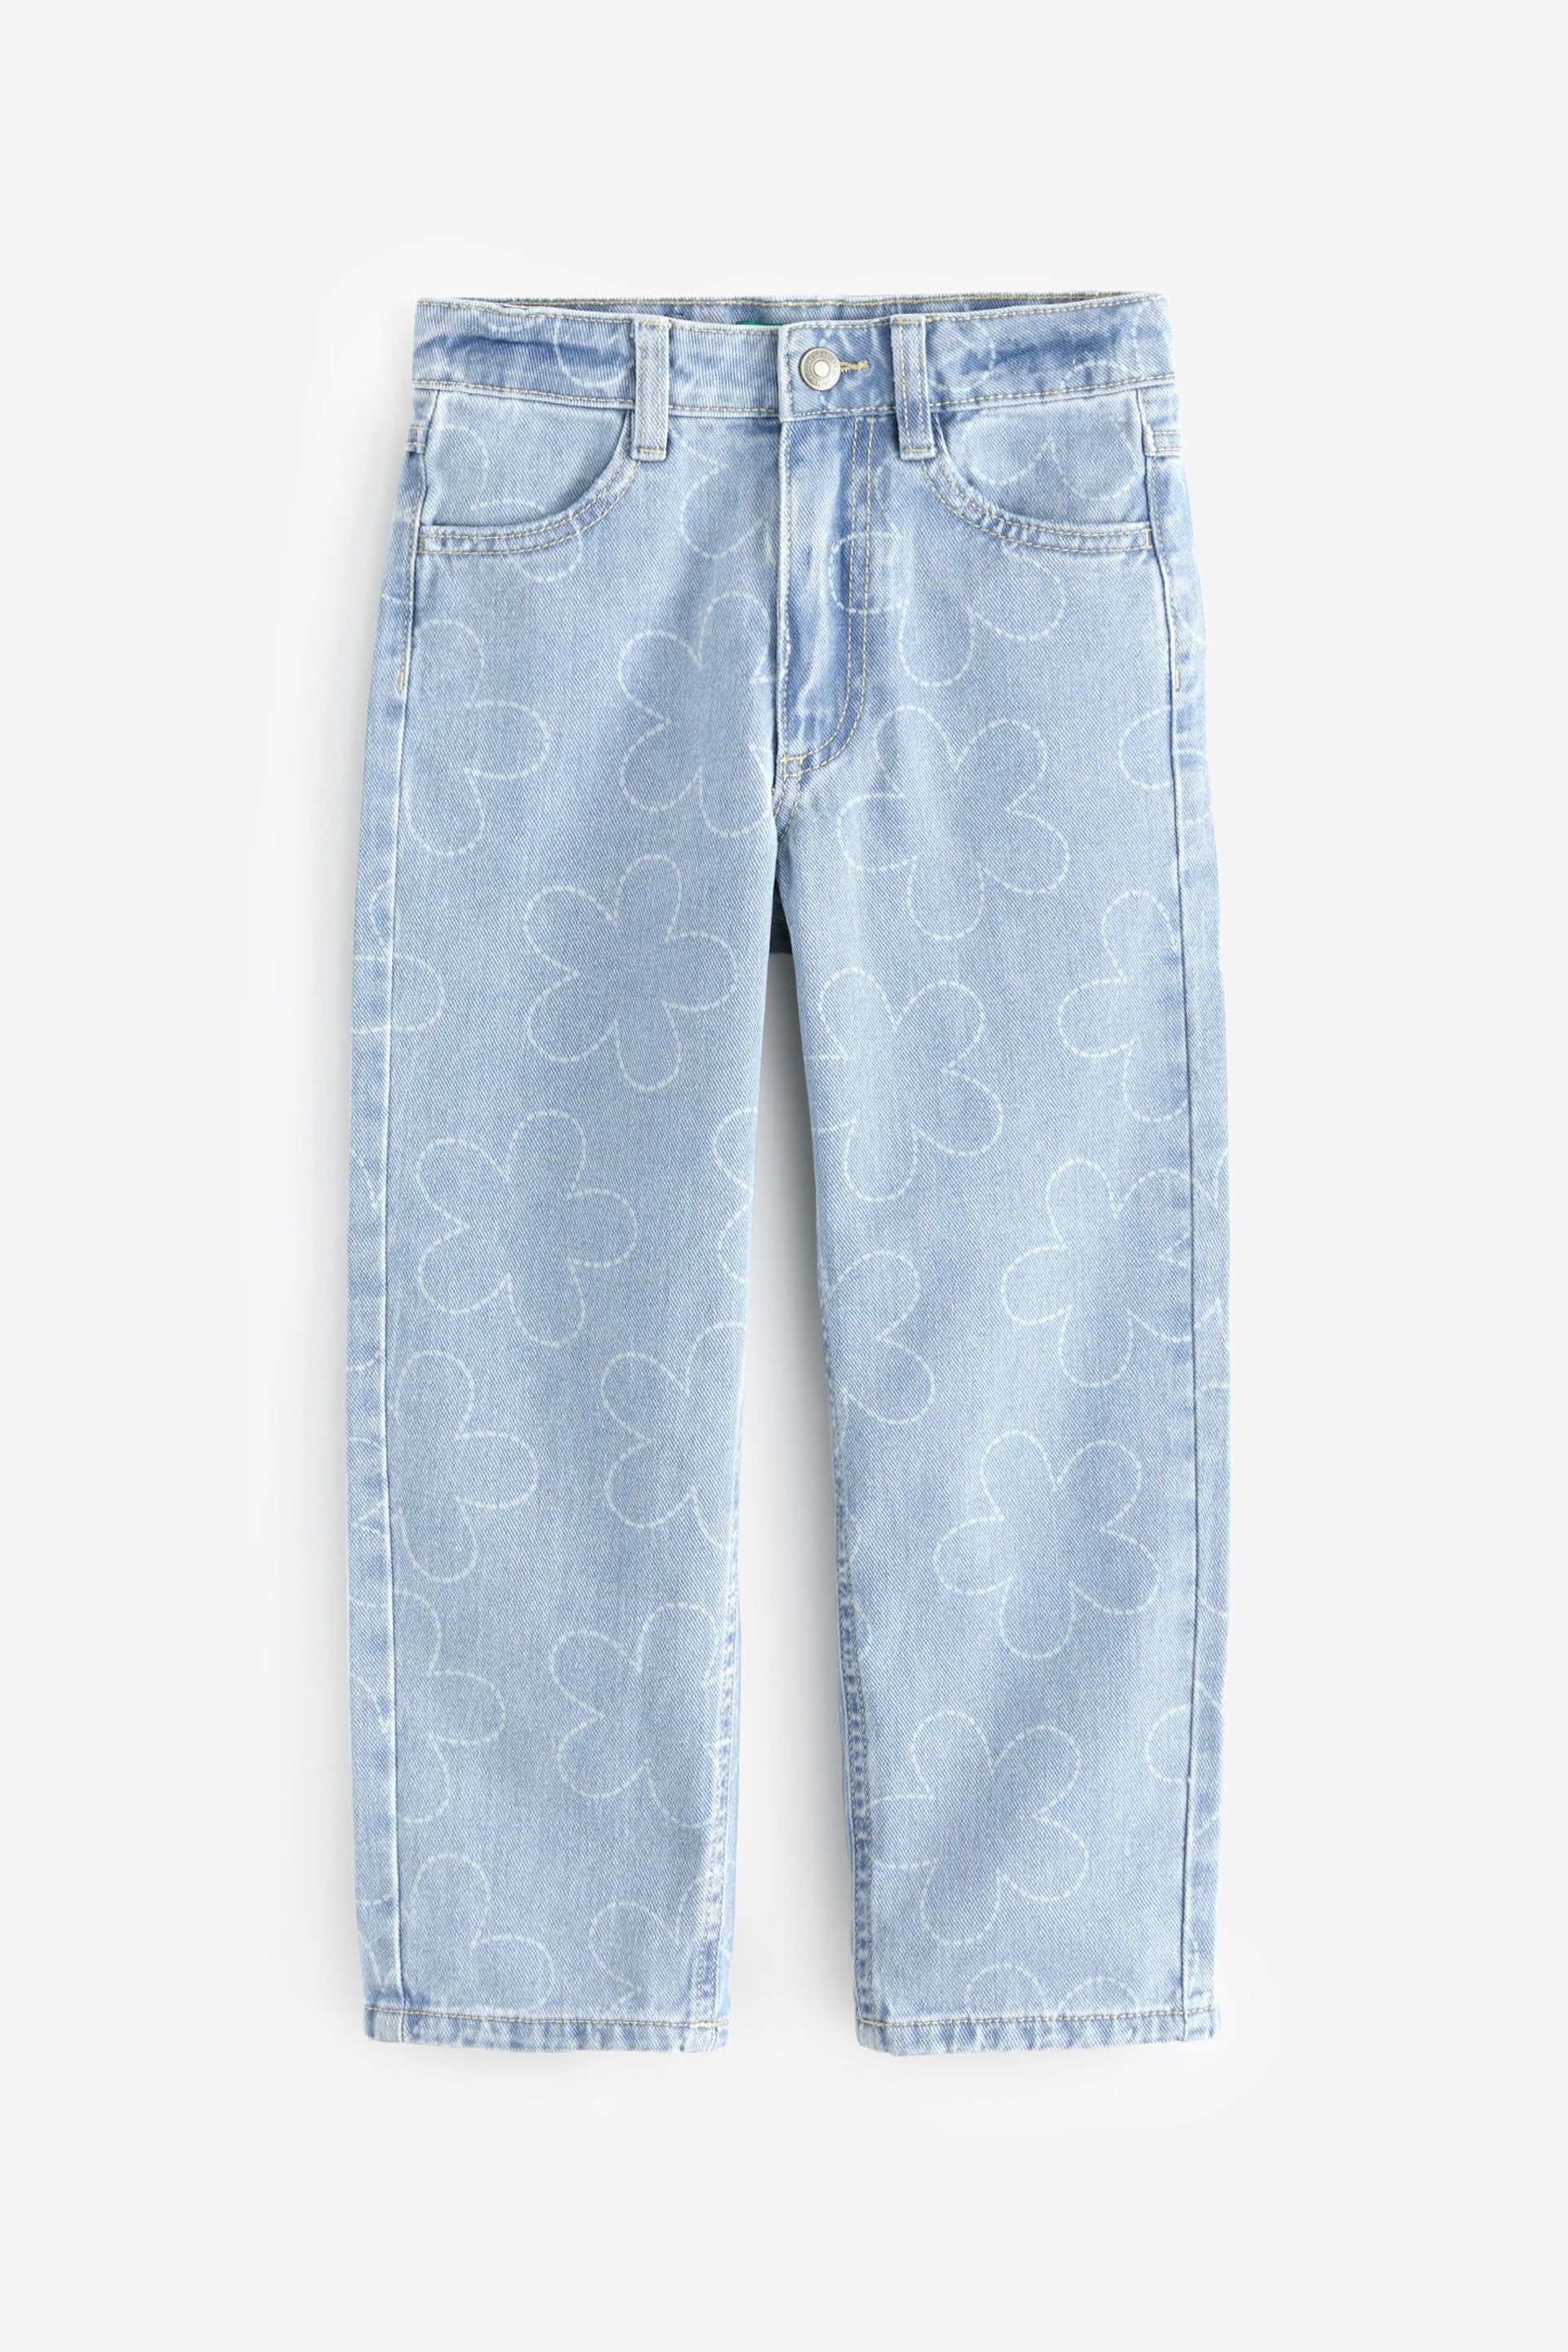 Benetton Girls Light Blue Denim Jeans - Image 1 of 2